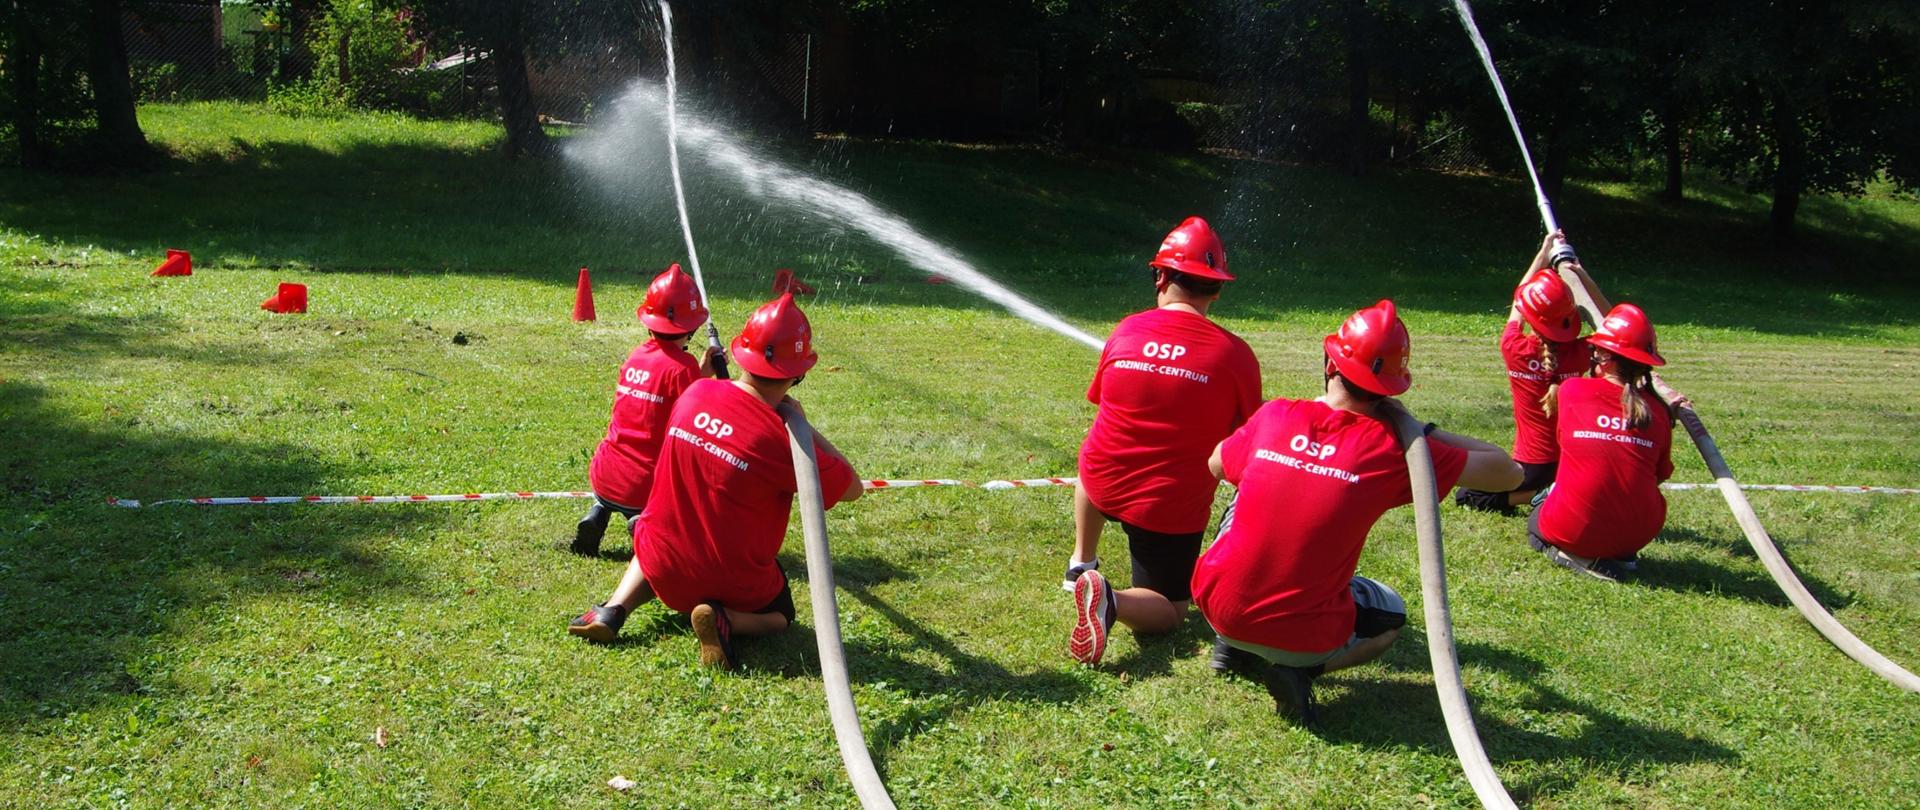 Widok z tyłu. Członkowie MDP w czerwonych koszulkach i czerwonych hełmach strumieniami wody strącają pachołki w konkurencji „mini-ćwiczenia bojowego”.